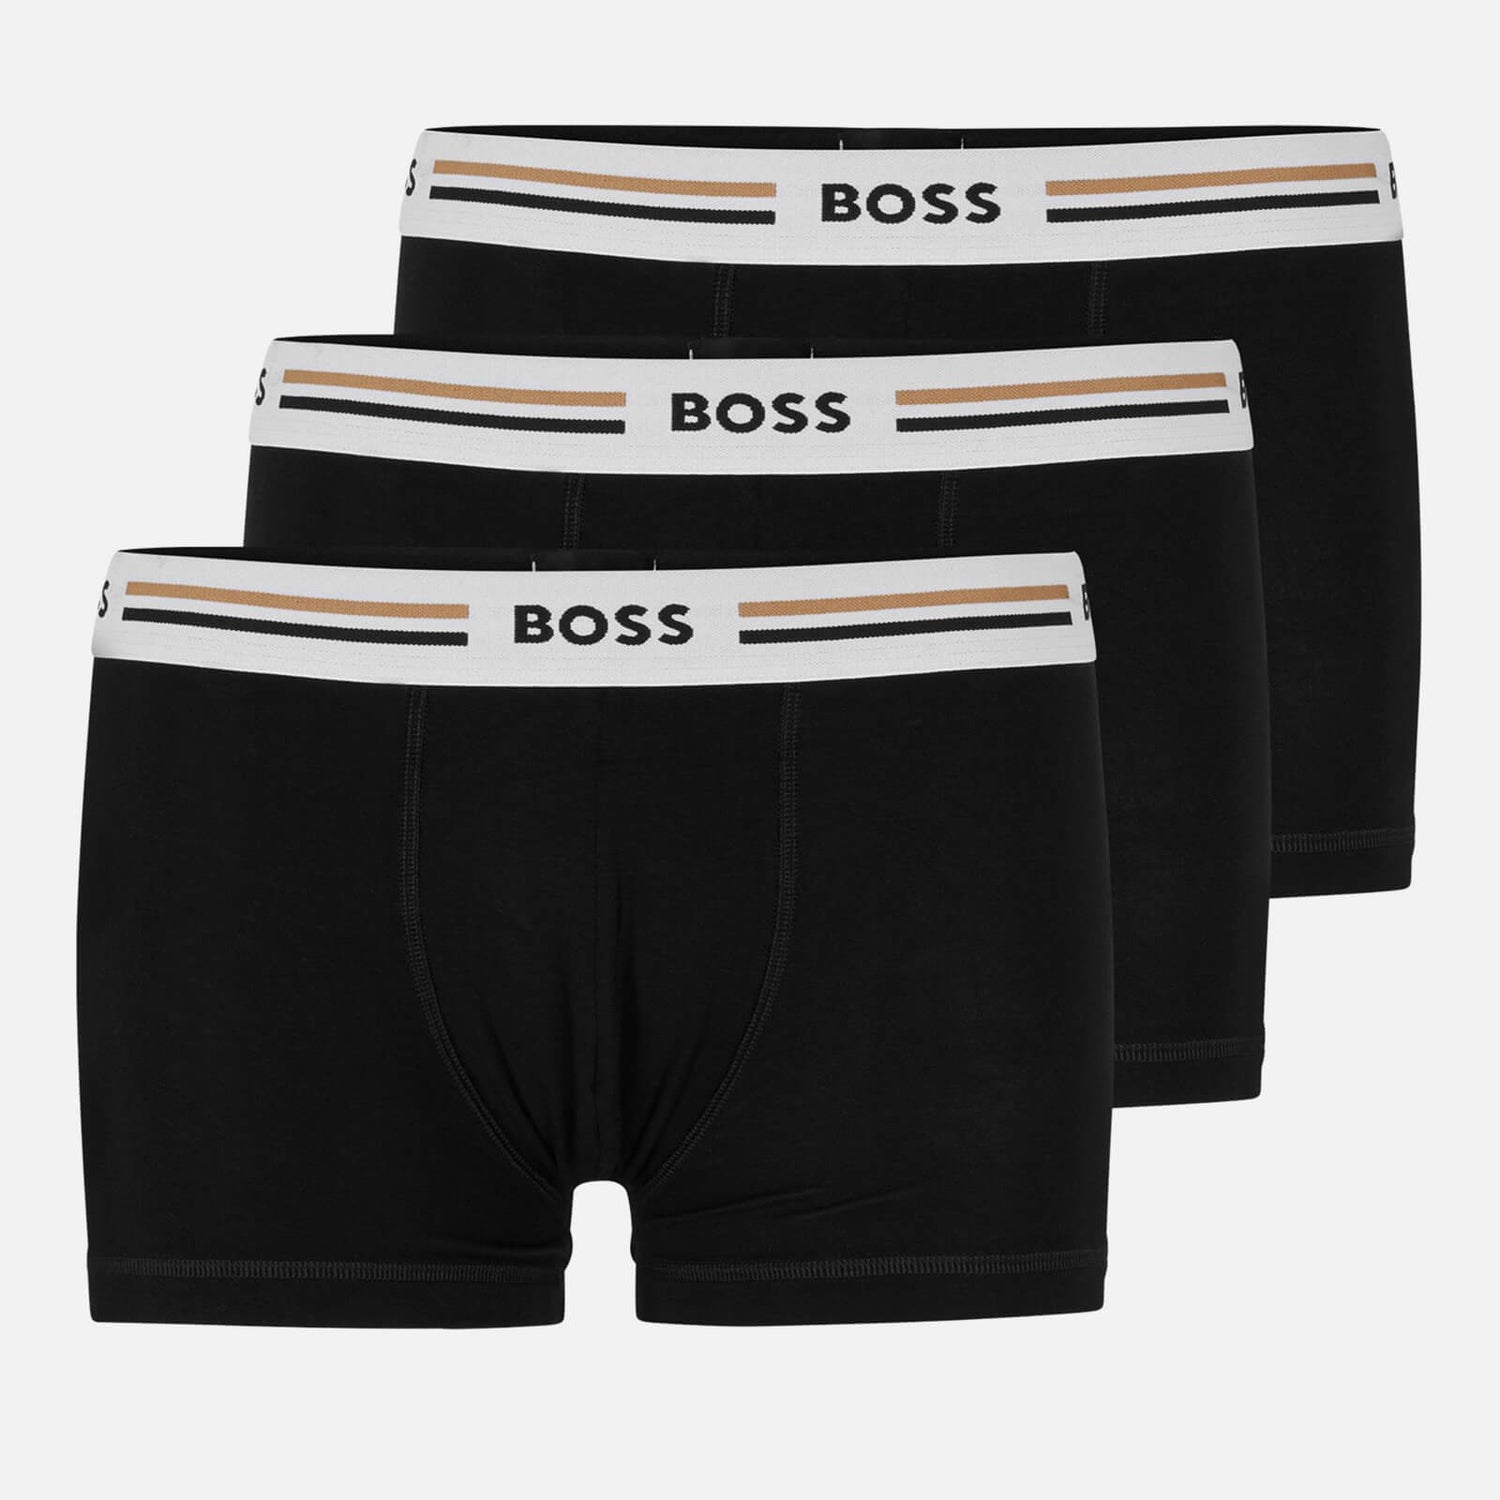 BOSS Bodywear Revive Three-Pack Jersey Trunks - S